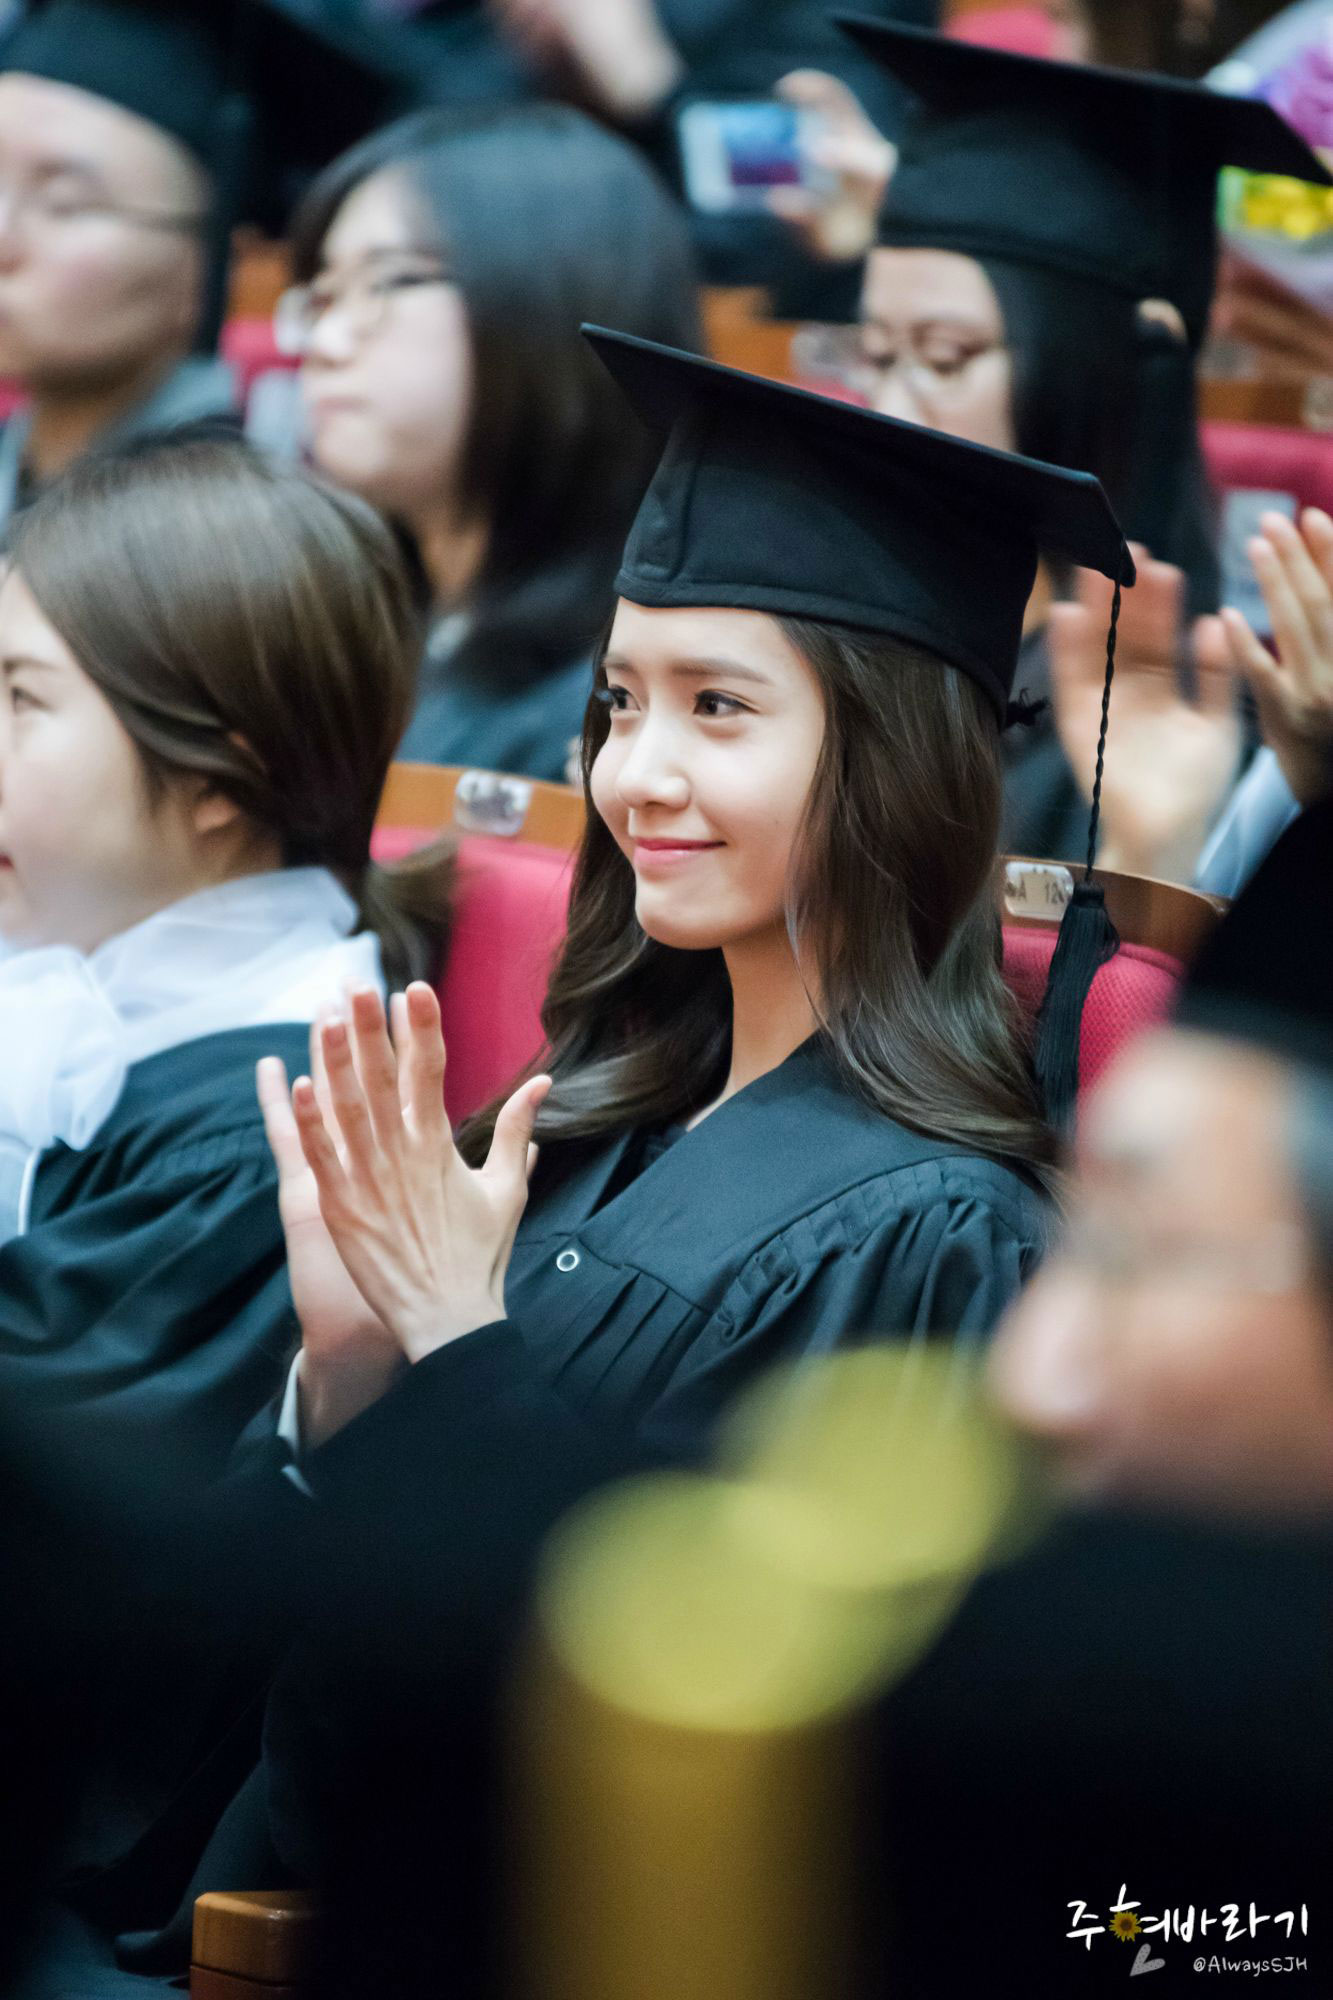 Yoona graduates from university